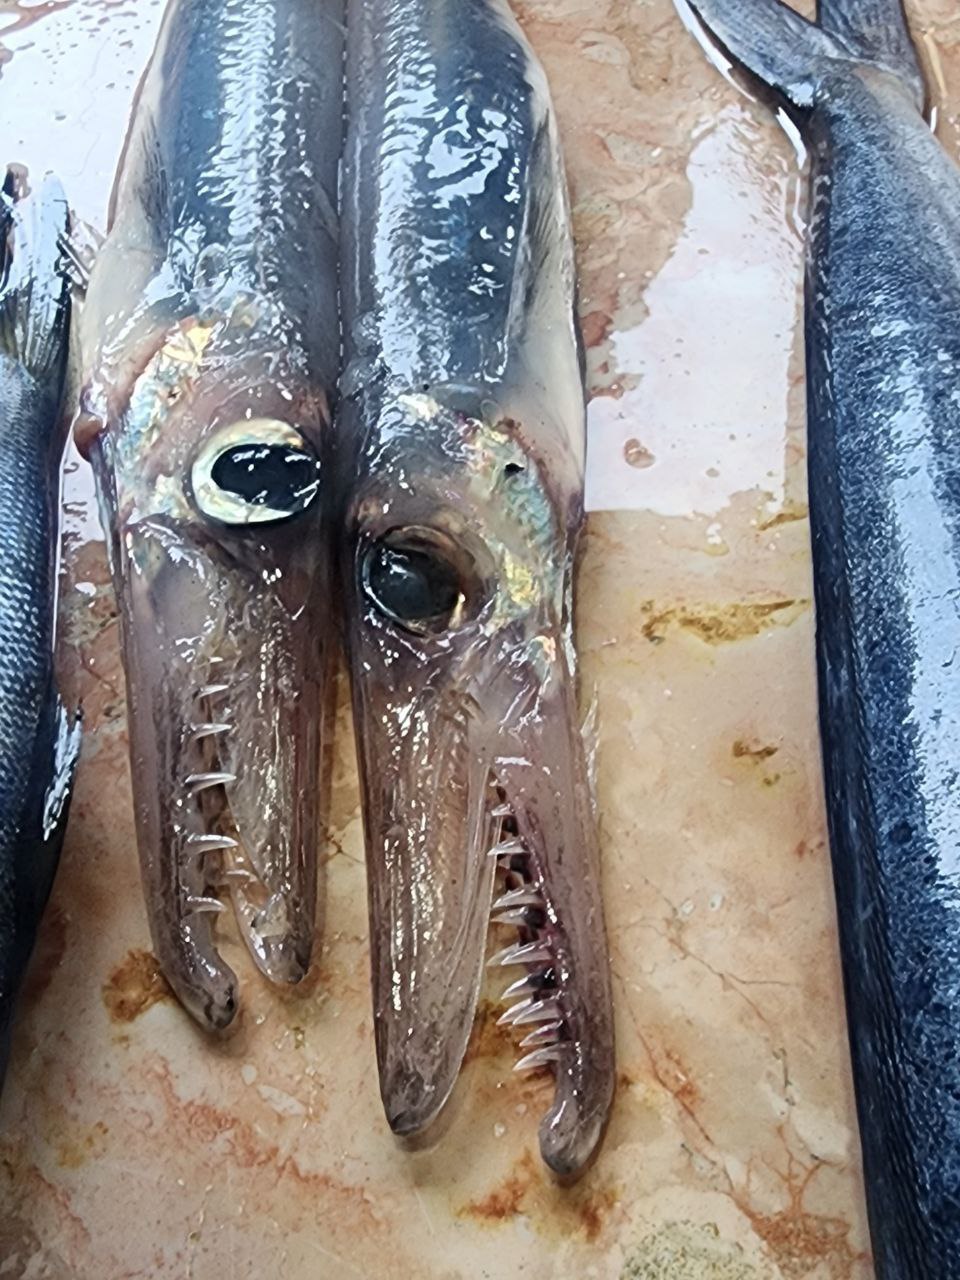 سمكة غريبة تظهر للمرة الثانية في طرطوس